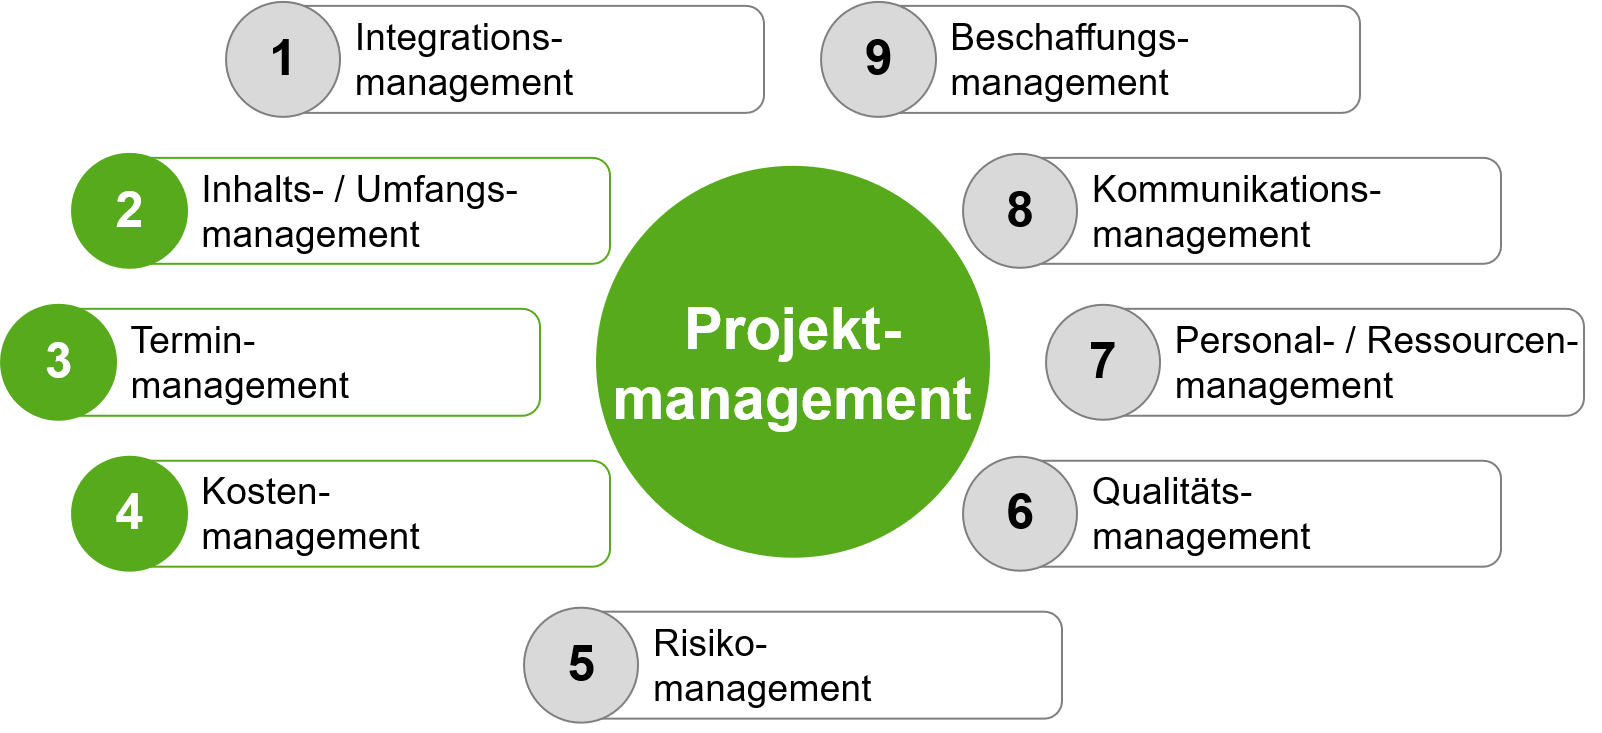 Infographik: Projektmanagement umfasst neun verschiedene Managementaufgaben wie Termin-, Kosten, Kommunikationsmanagement usw.